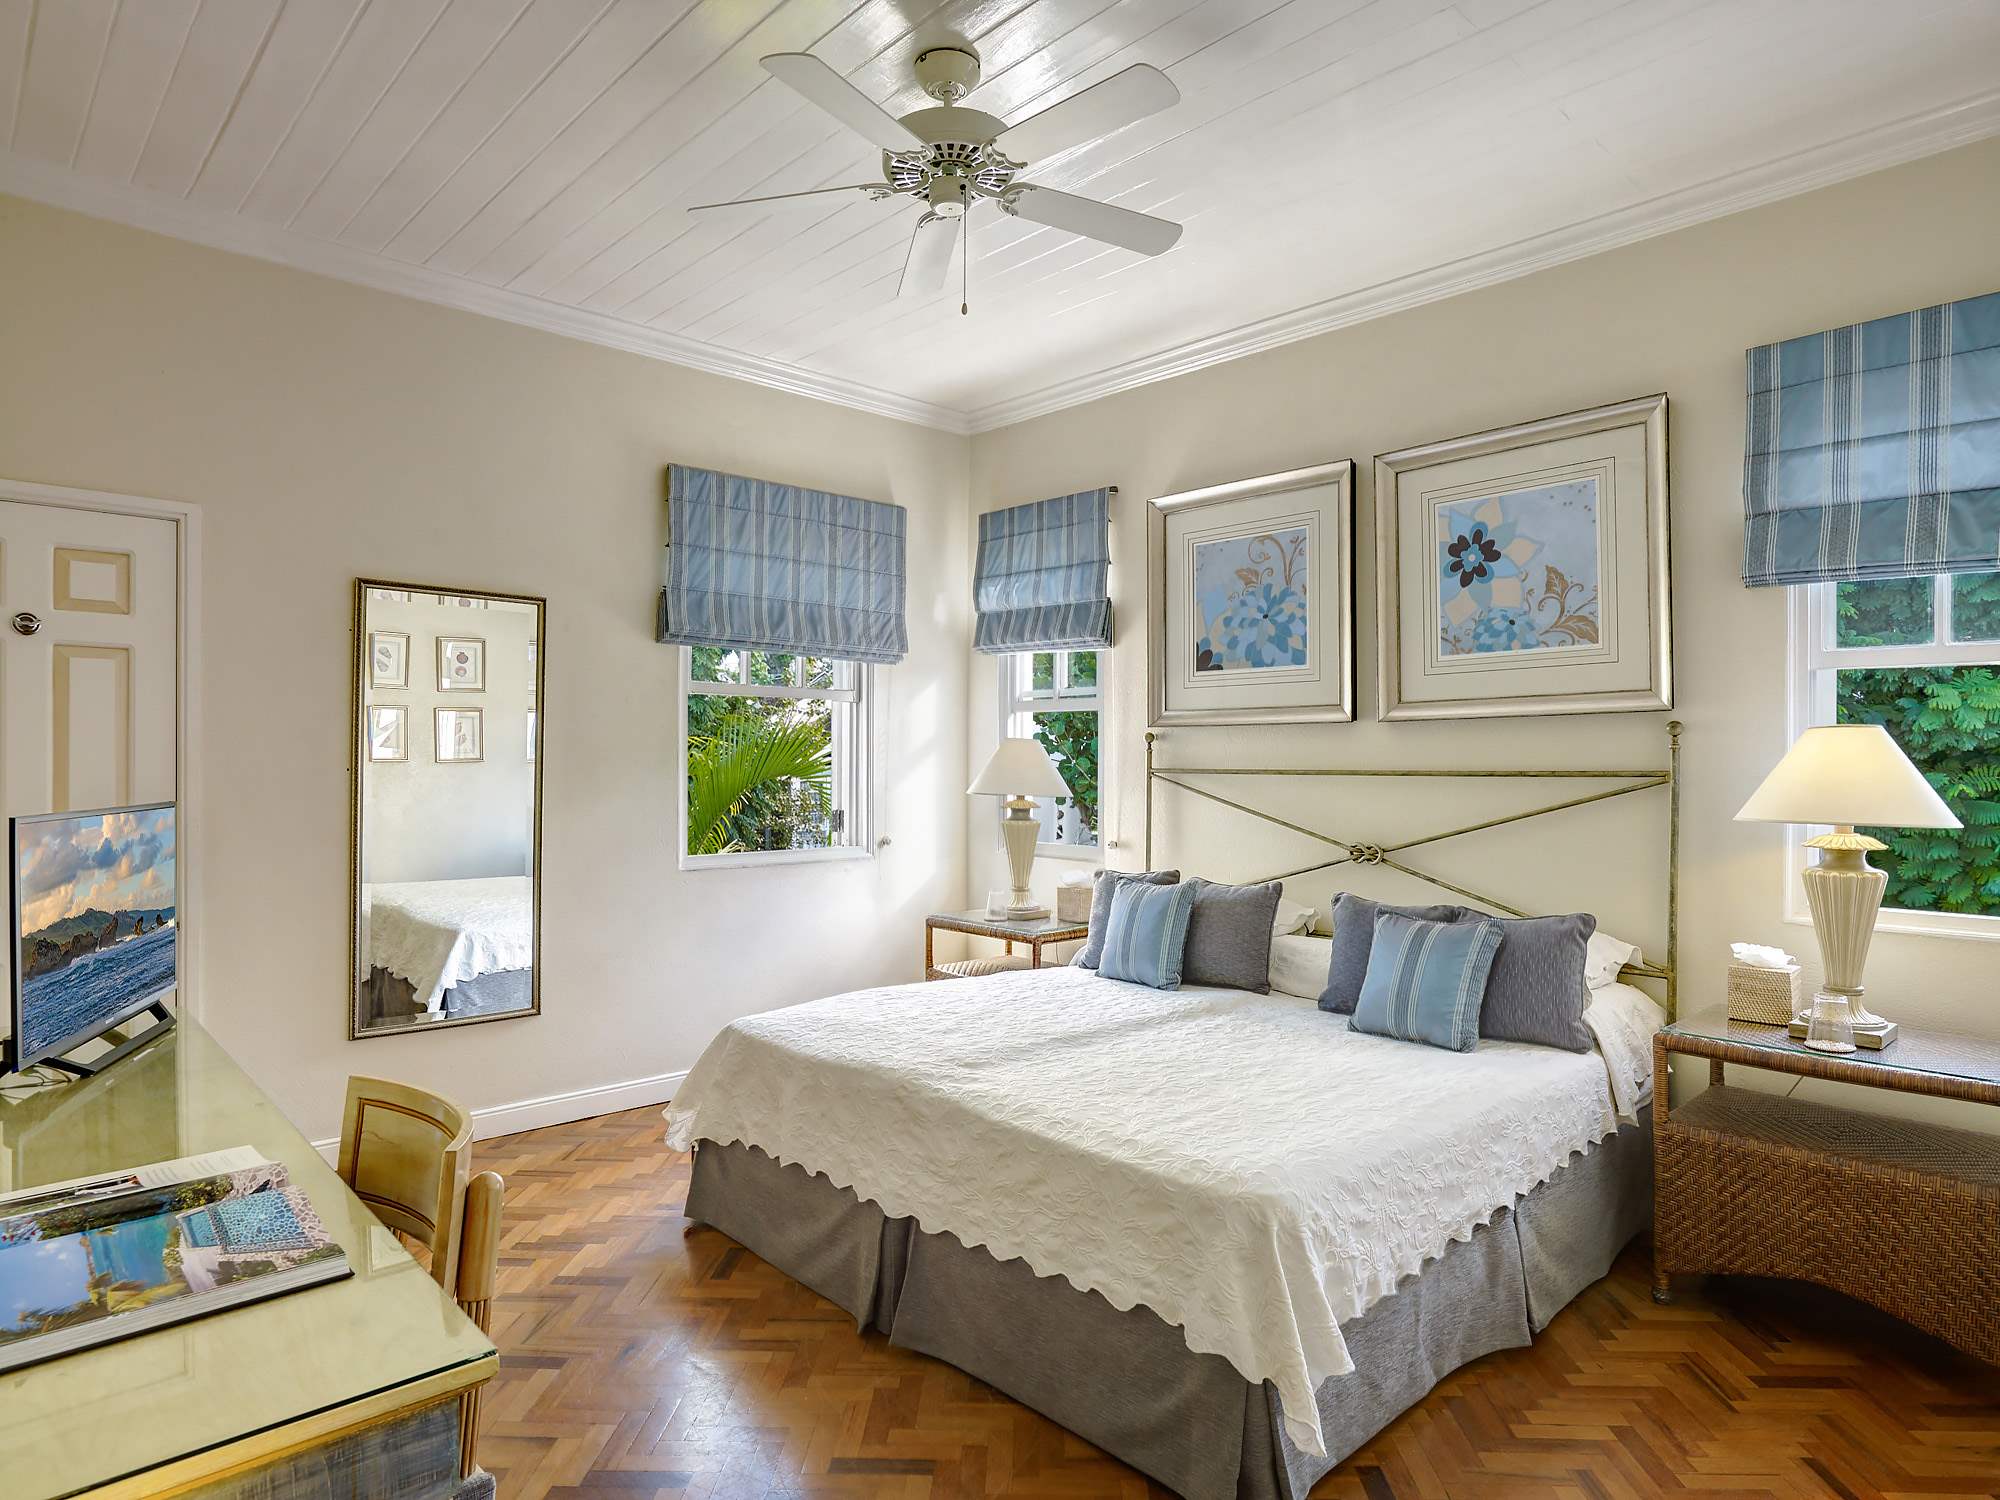 New Mansion, 4 bedroom villa in St. James & West Coast, Barbados Photo #18